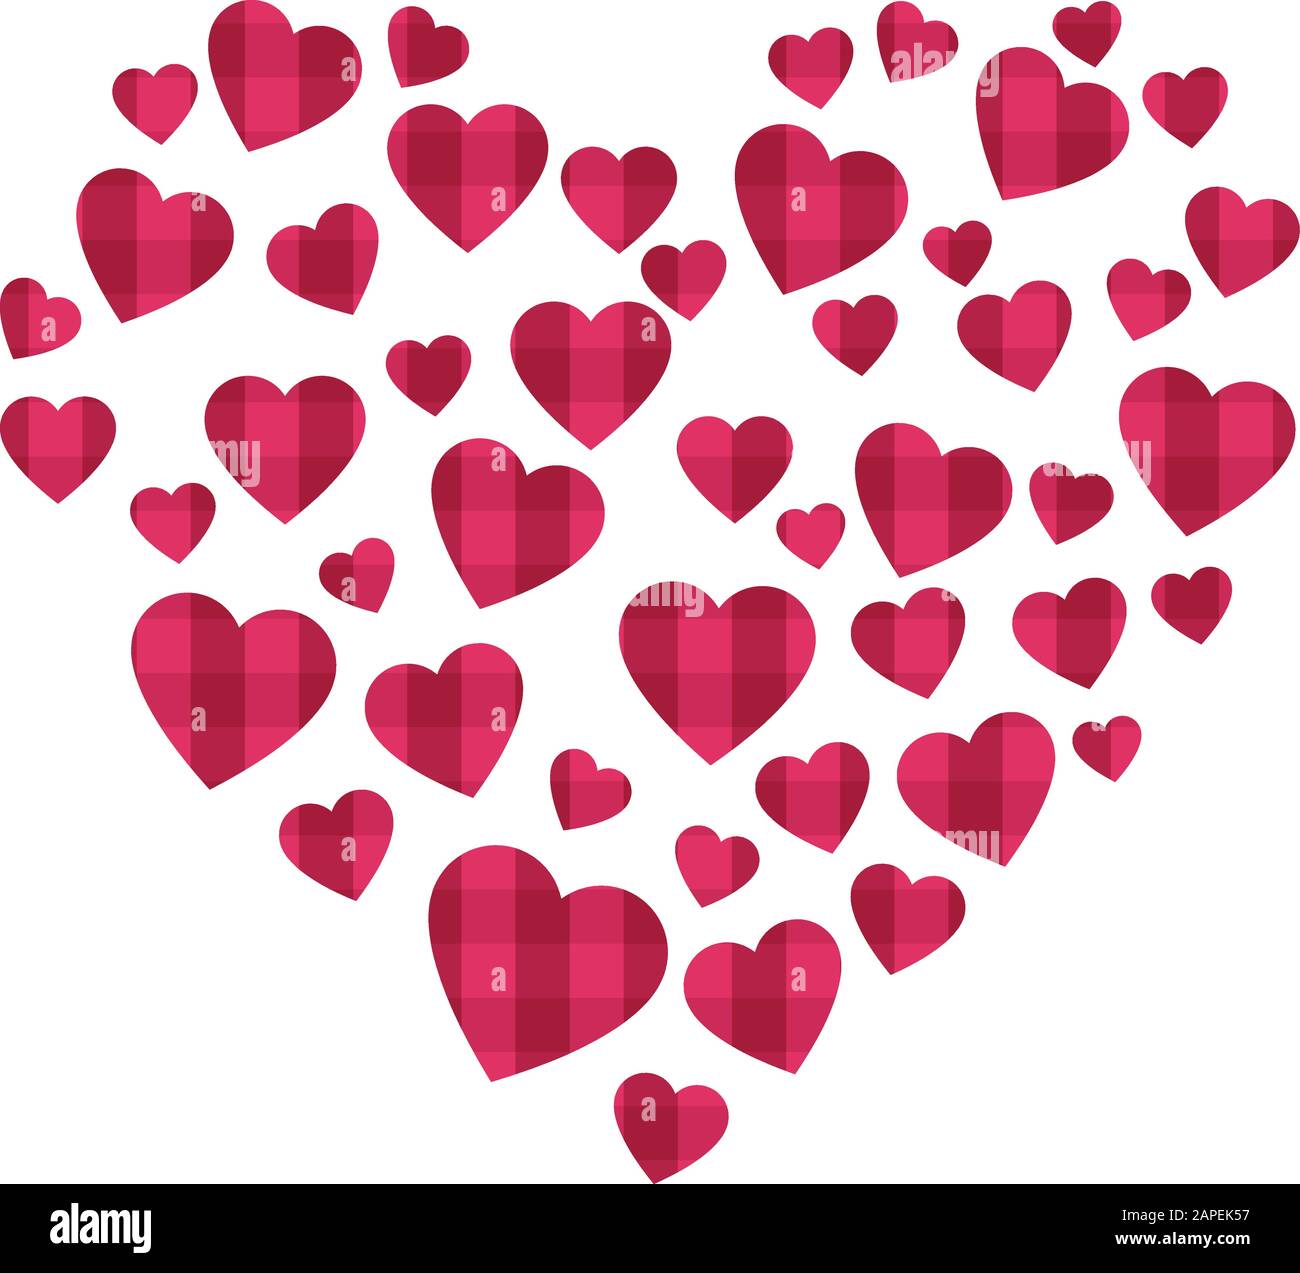 Viele kleine Herzen mit Textur, die eine große Herzform bilden, valentindetails, Design Stock Vektor